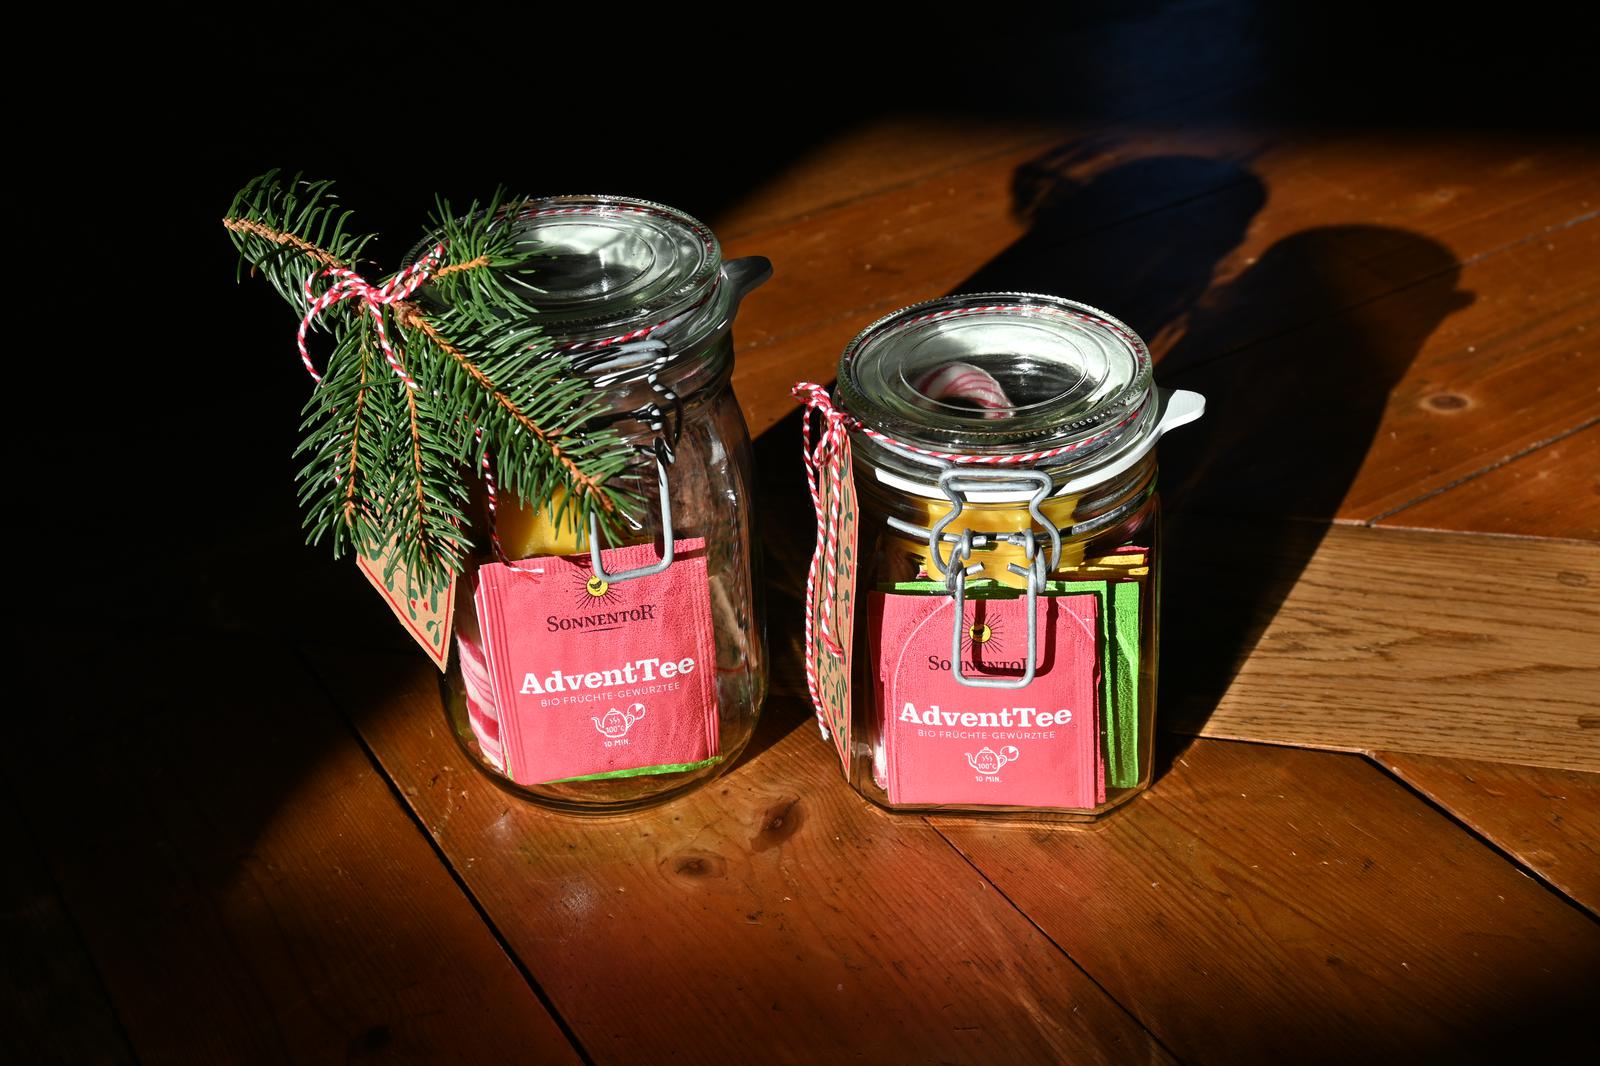 Advent im Glas|Advent in der Tüte|Adventsglas|Advent zum Verschenken|Adventsgeschenk|Adventsgeschenke|Advent|Adventszeit|Weihnachtsgeschenk|Weihnachtsgeschenke|Geschenk im Glas|Glückswerkstatt|Basteln|DIY|selbstgemacht|selbstgemachte Geschenke|DIY-Geschenke|Freude schenken|Adventsfreude schenken|Sonnentor-Tees|Sonnentor